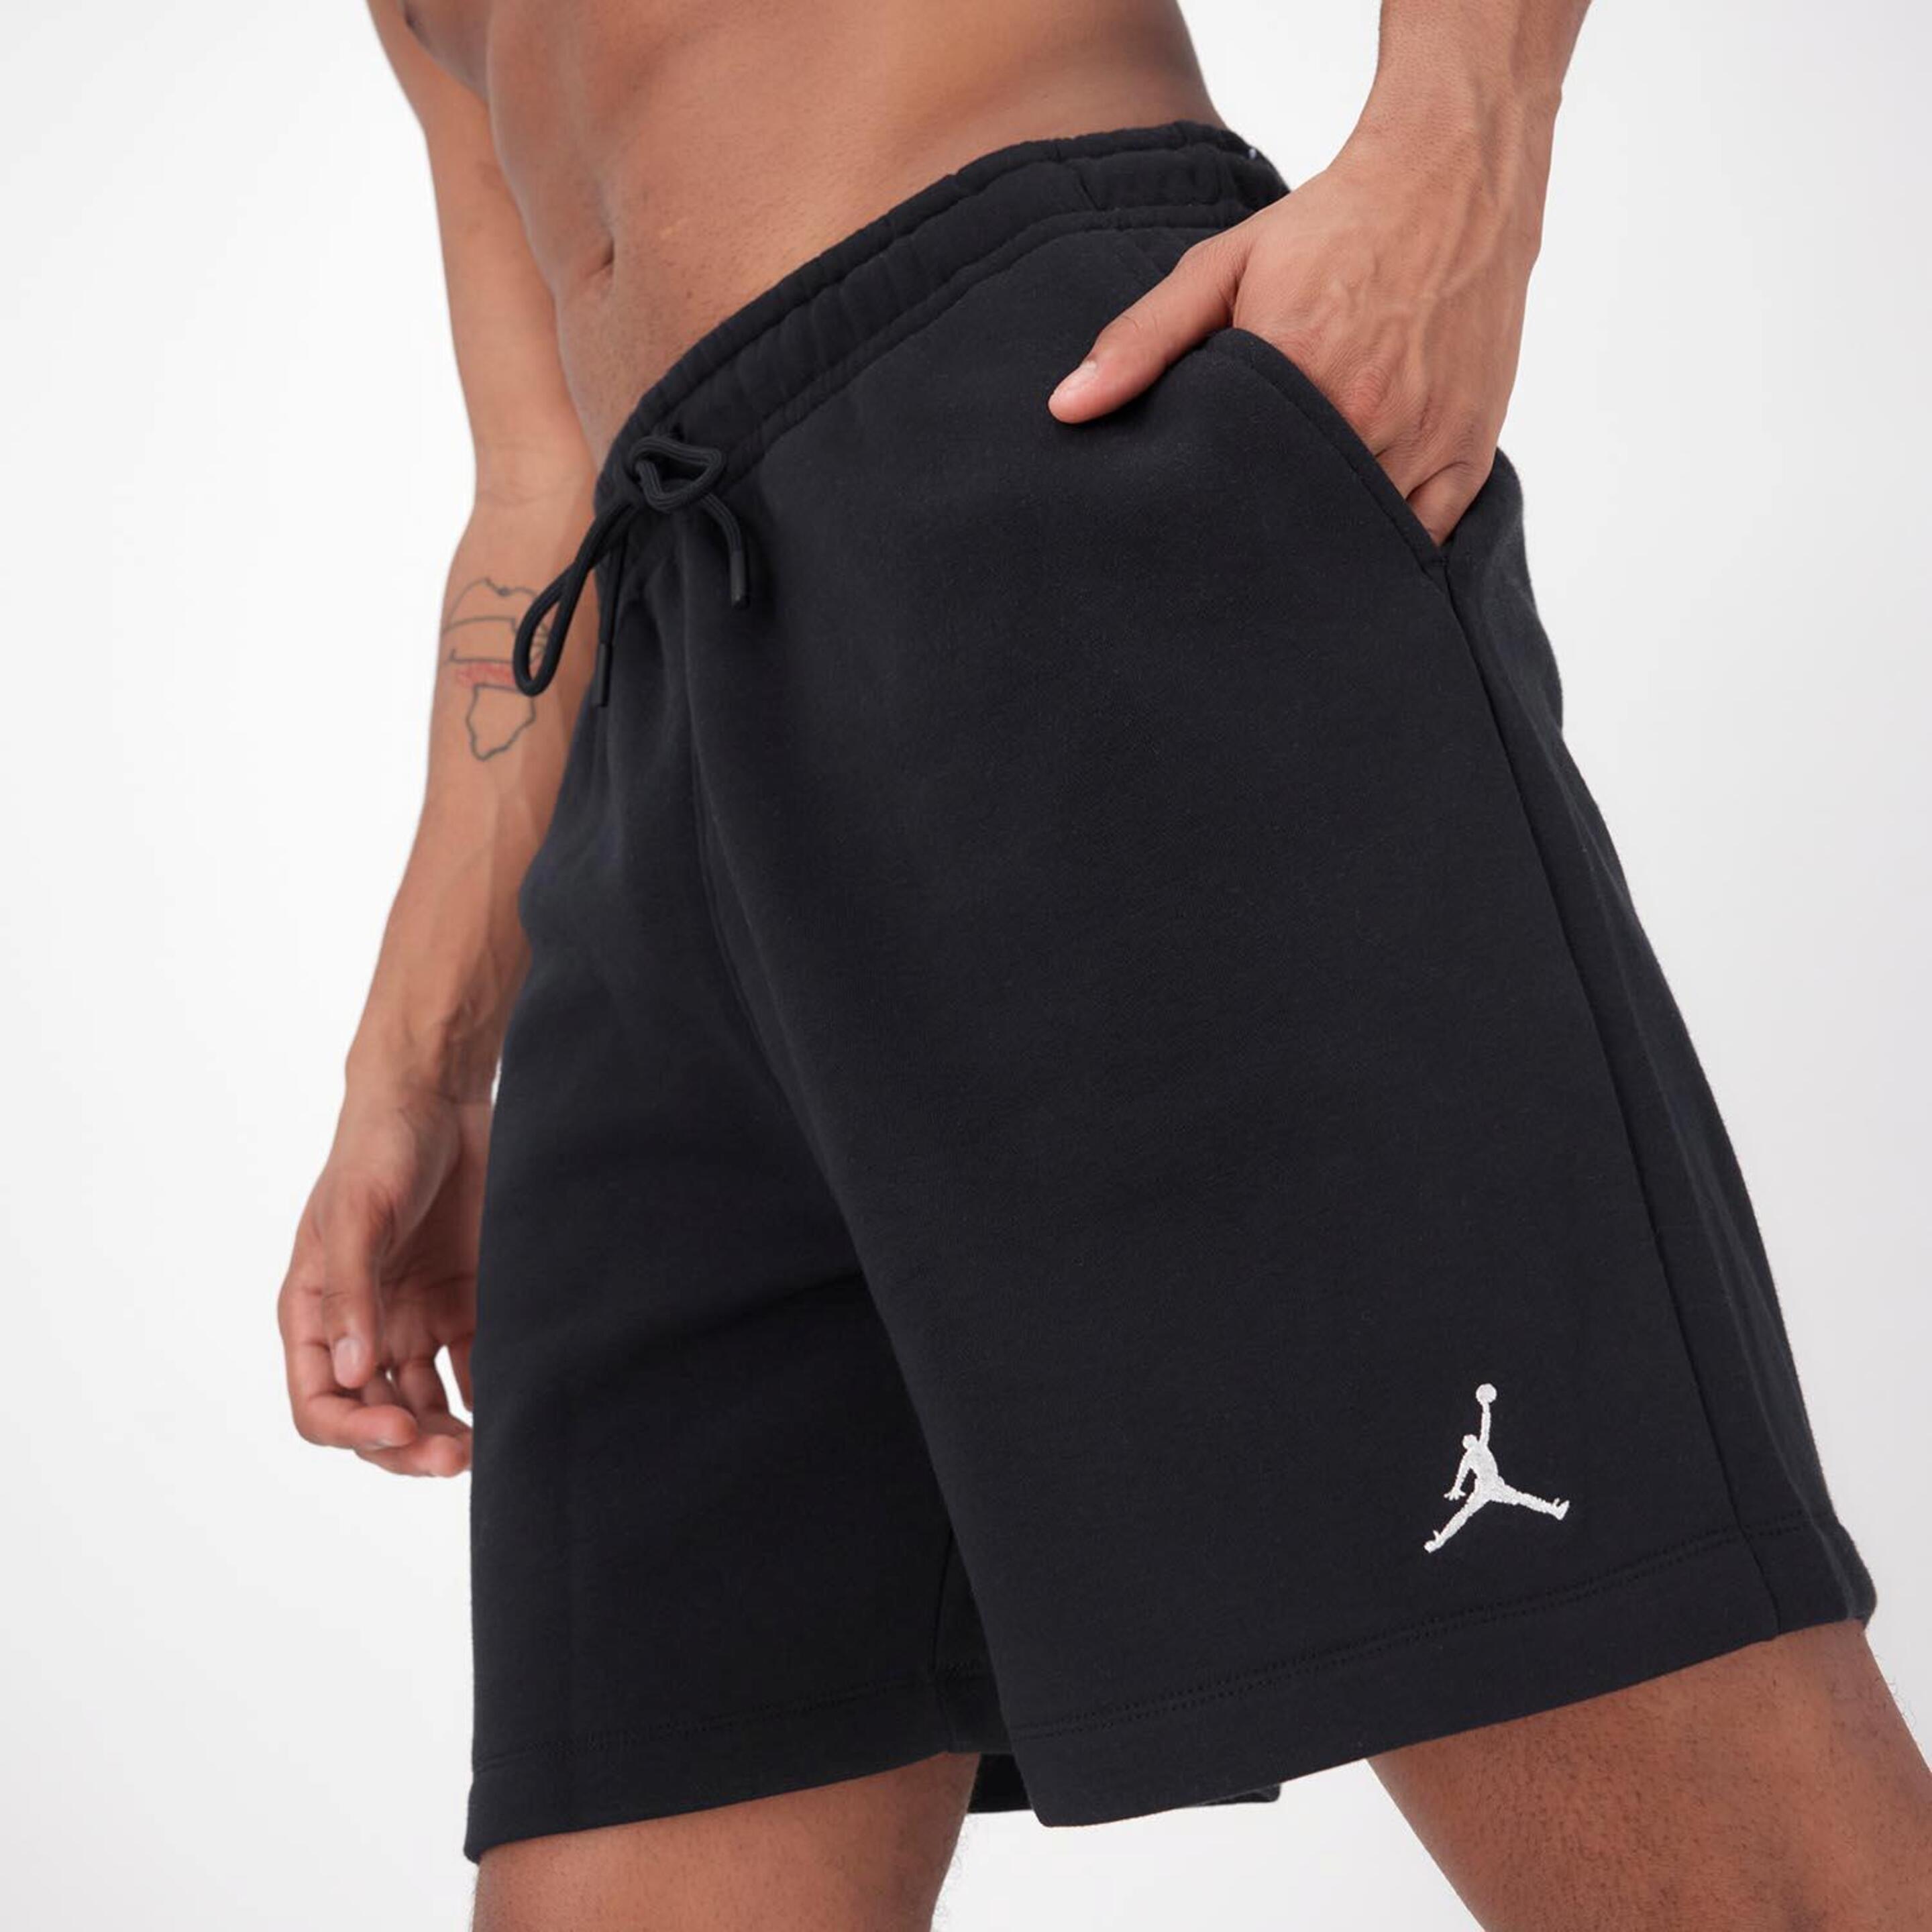 Pantalón Corto Jordan - negro - Pantalón Baloncesto Hombre